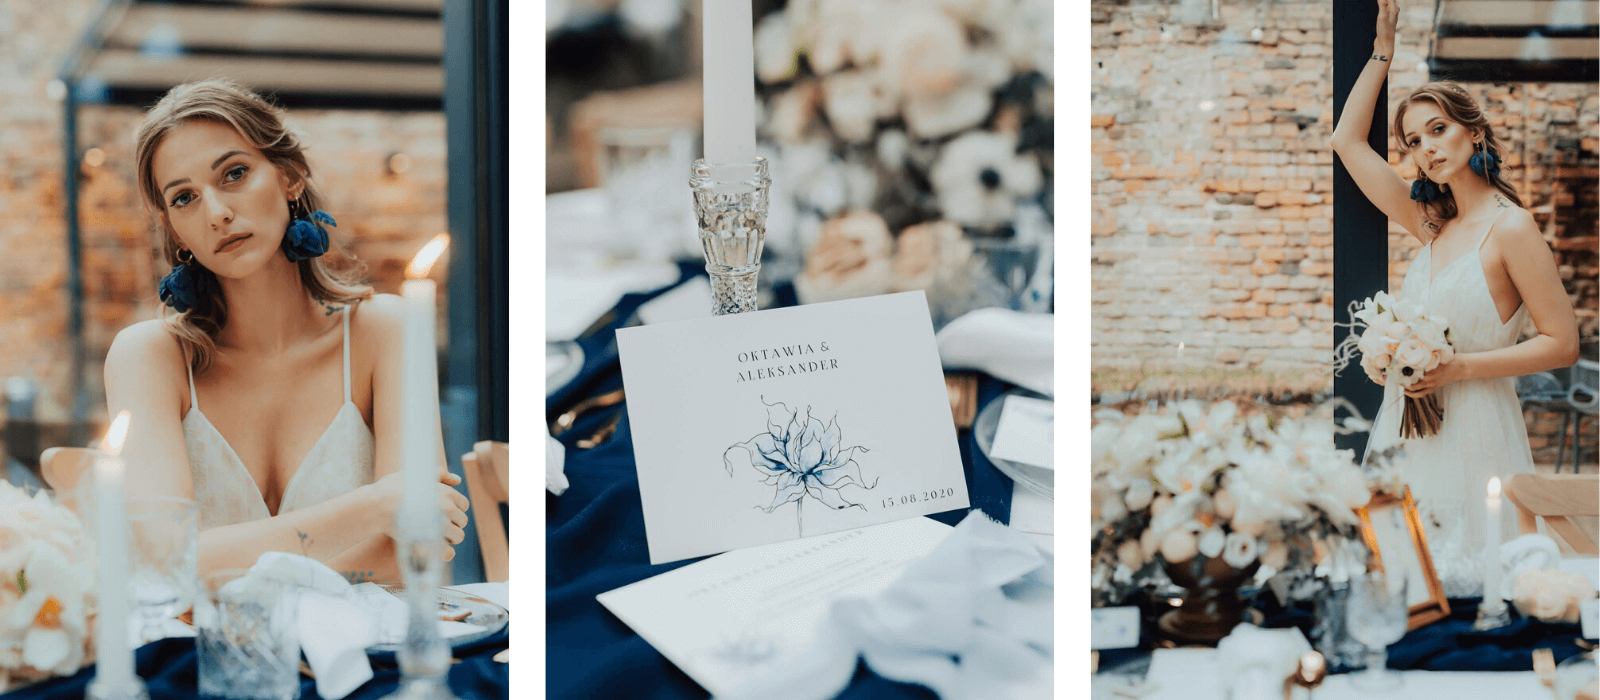 stylizowana sesja ślubna clasic blue design your wedding magazyn wesele